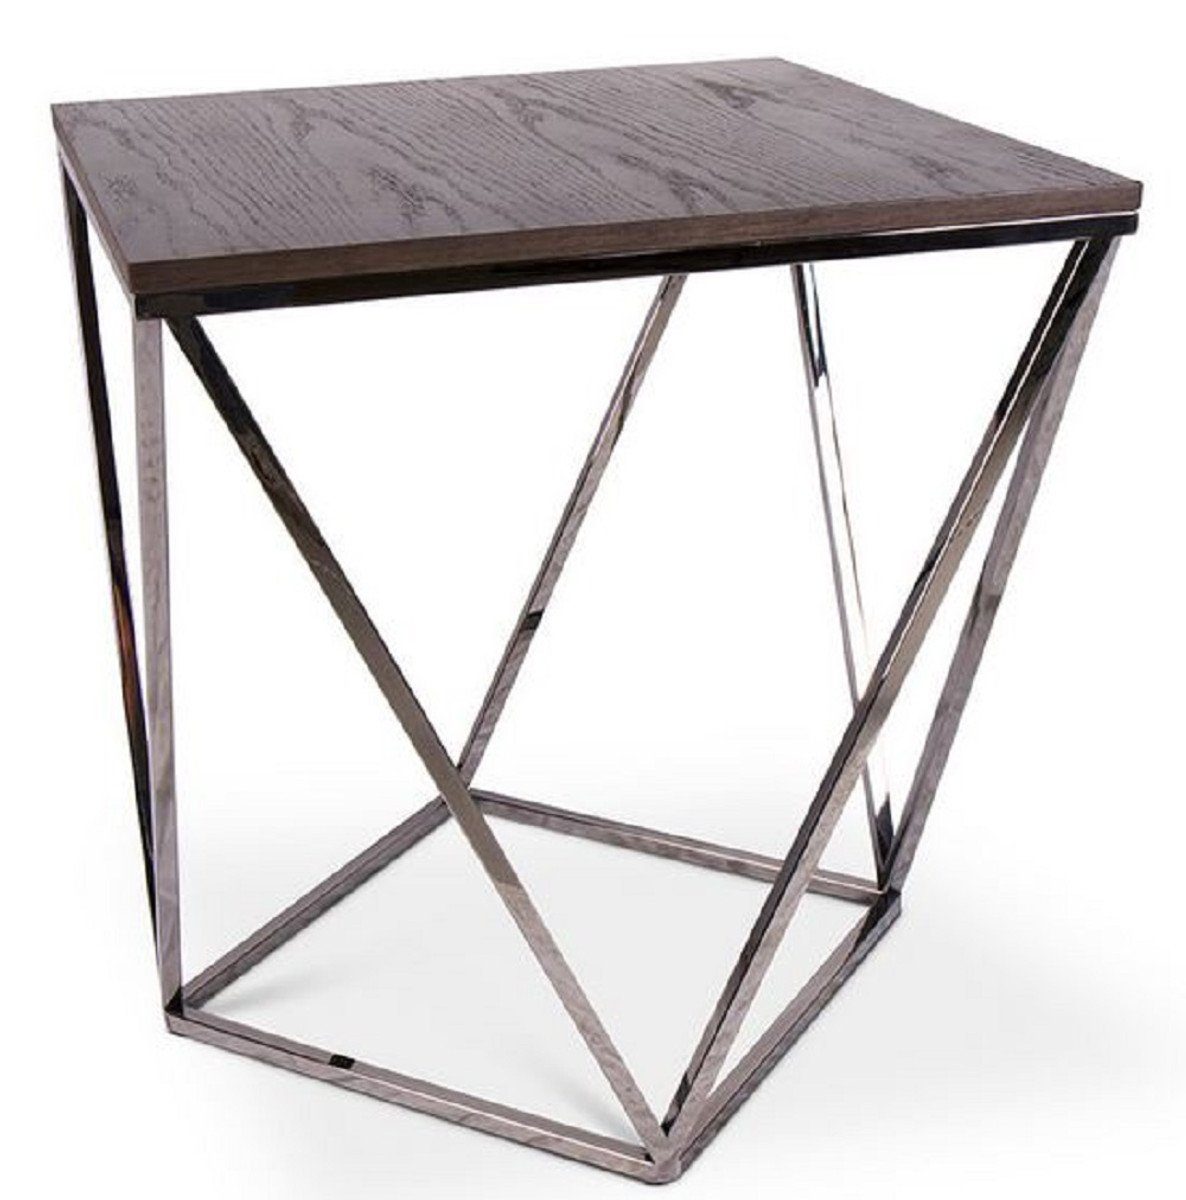 Casa Padrino Beistelltisch Designer Beistelltisch Braun / Silber 57 x 57 x H. 60 cm - Tisch mit gebeizter Eichenfurnierplatte - Wohnzimmermöbel - Luxus Qualität